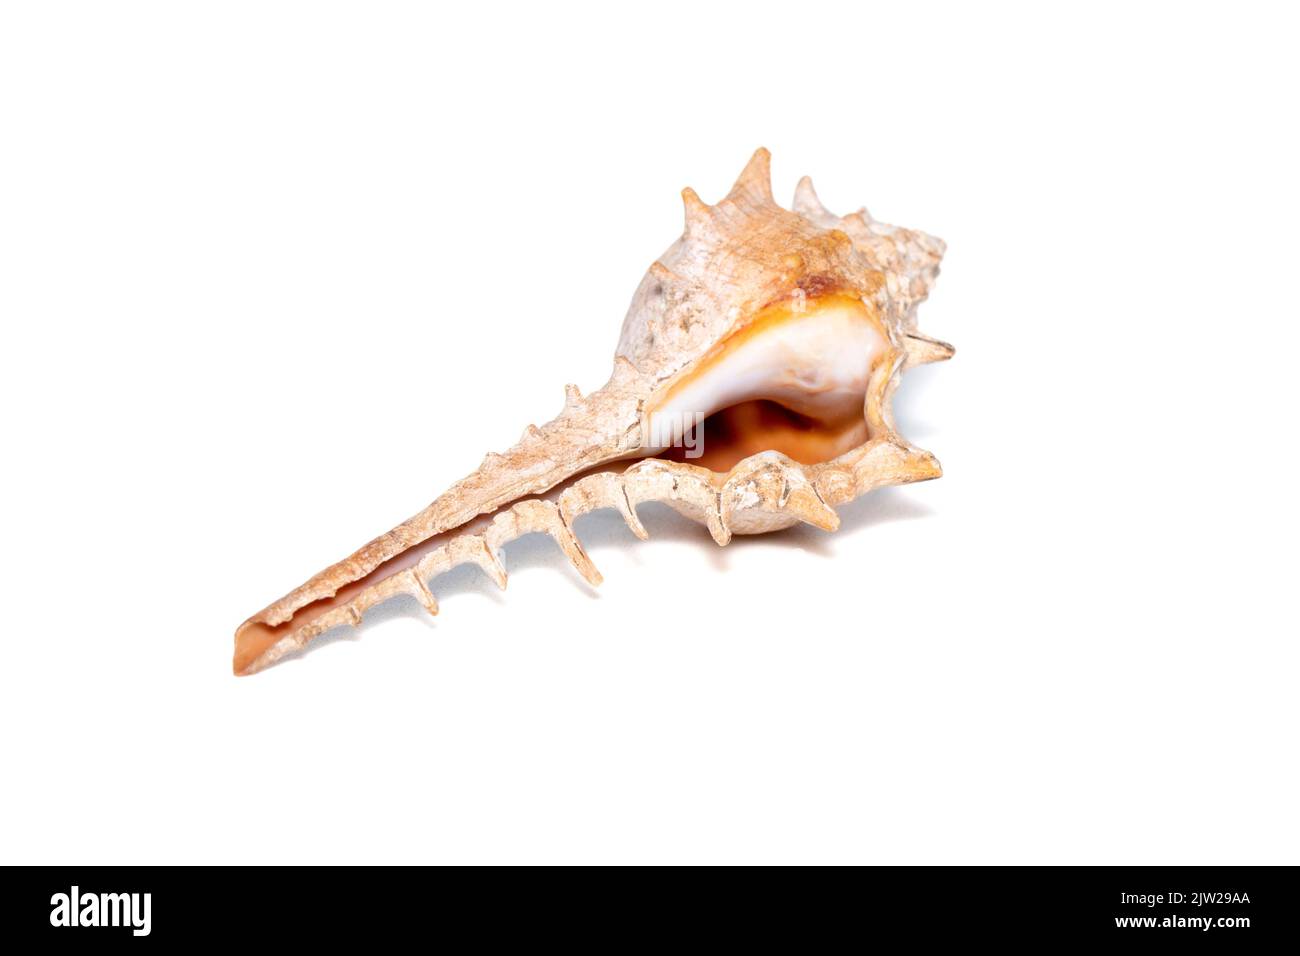 Image de la coquille de conch épine (murex trapa) sur fond blanc. Animaux sous-marins. Coquillages. Banque D'Images